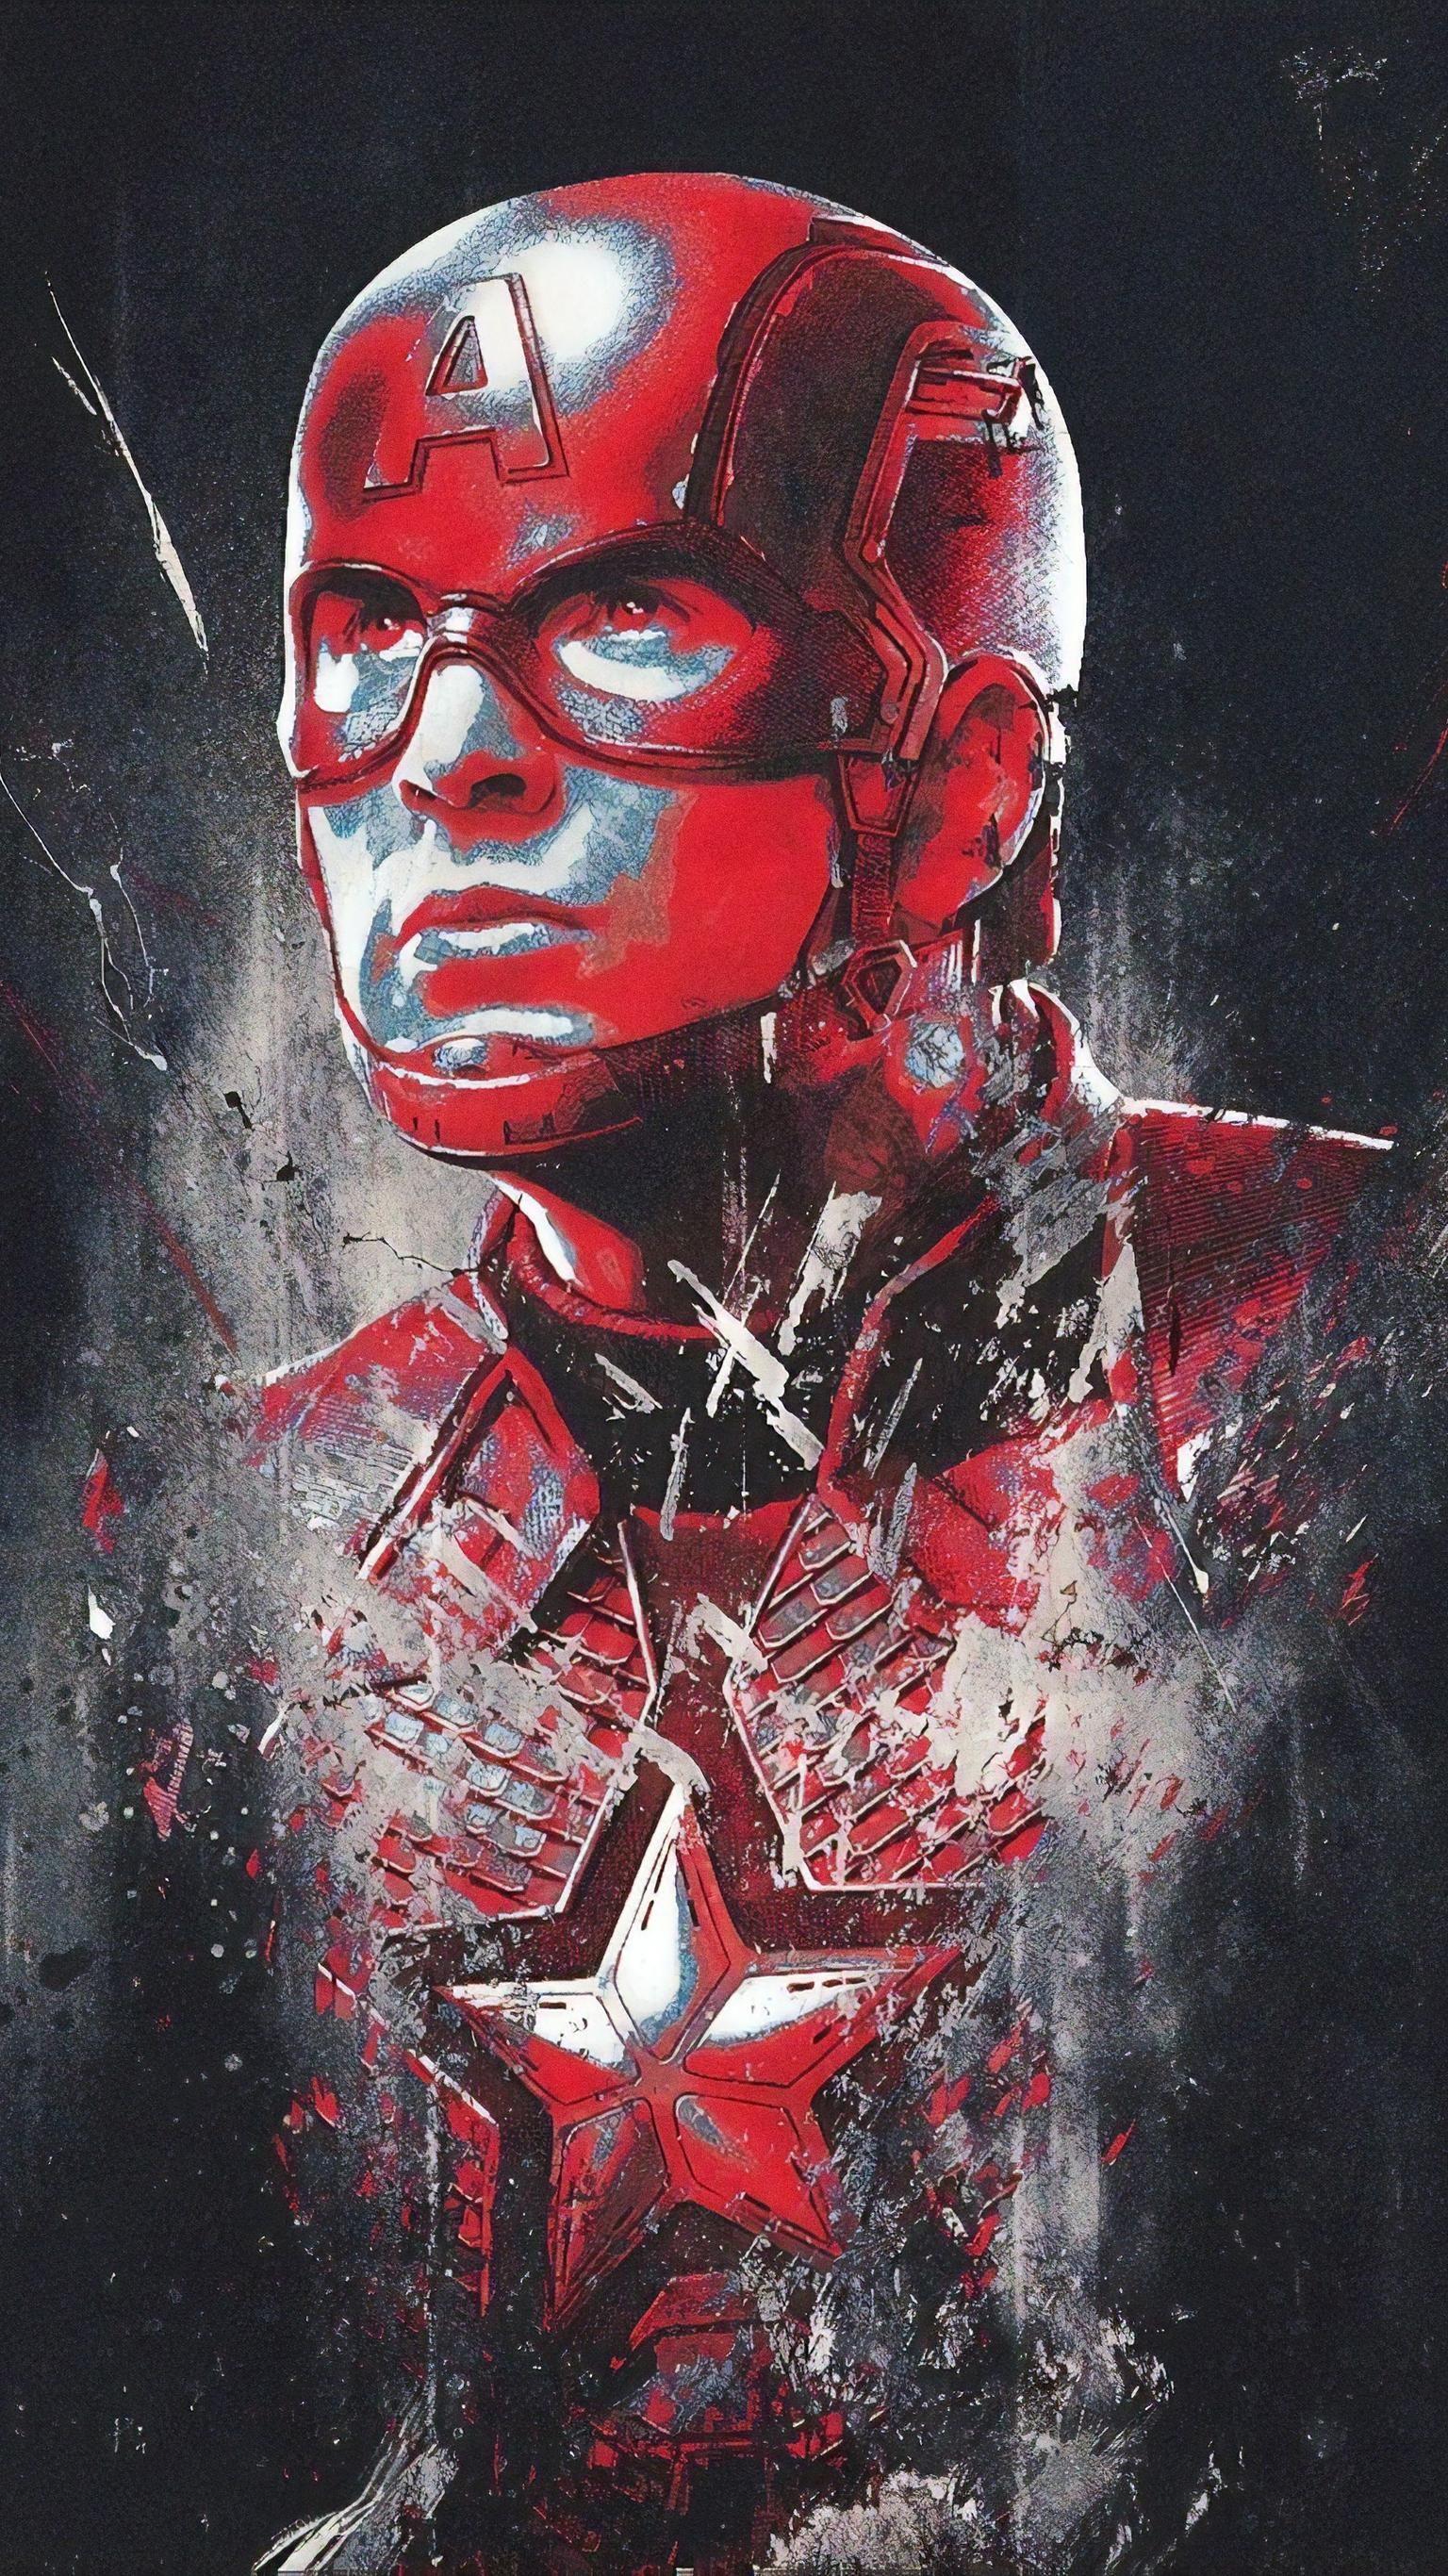 Avengers: Endgame (2019) Phone Wallpaper. Action